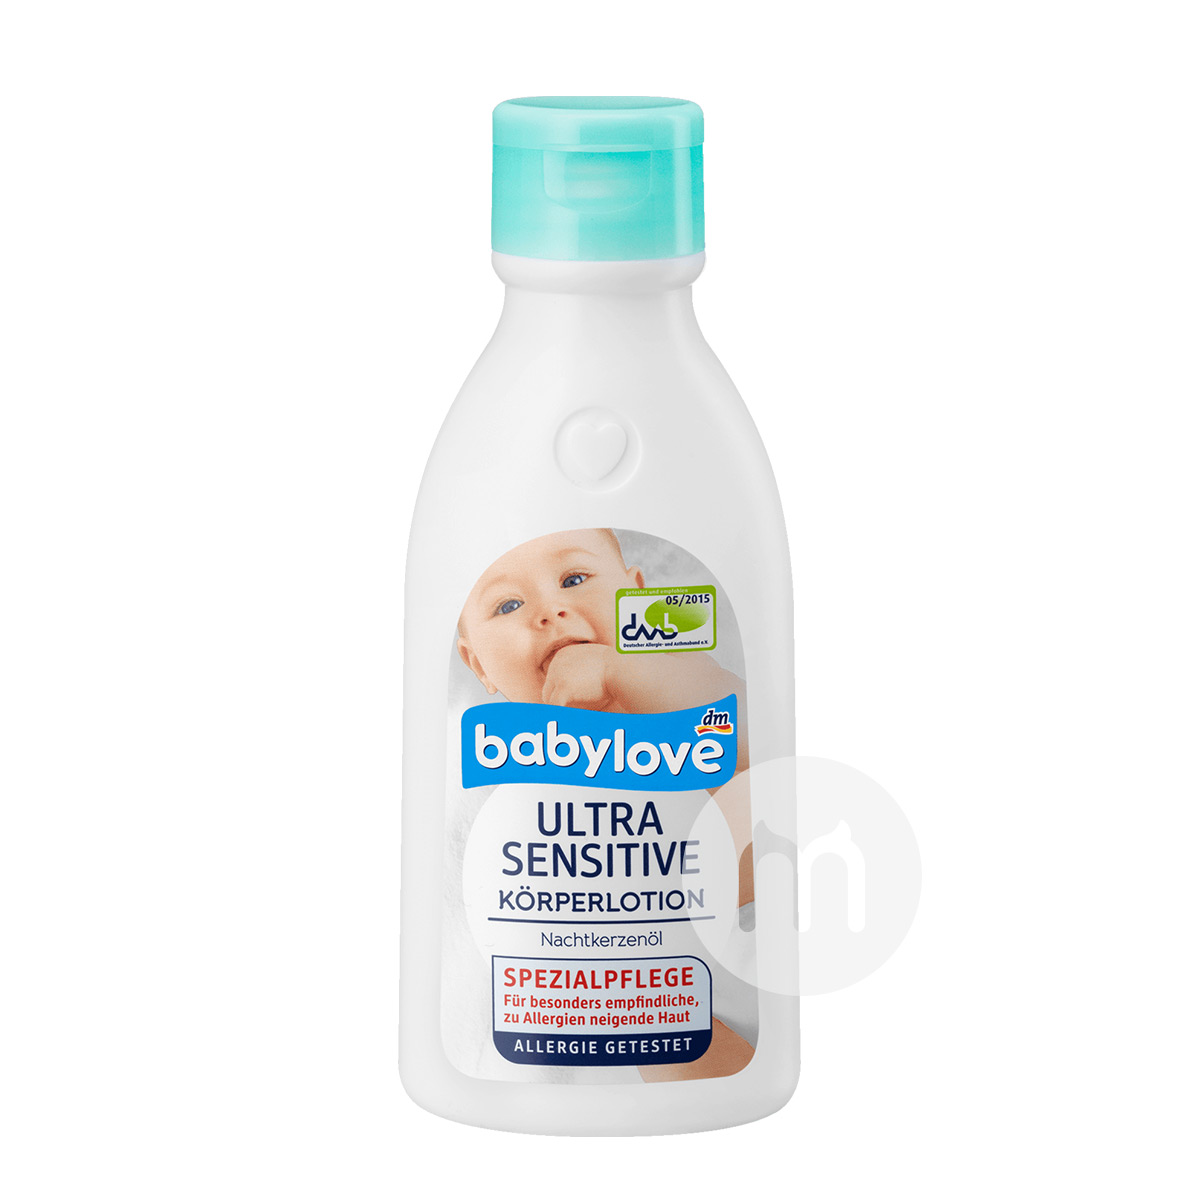 Babyloveドイツの宝物は乳幼児の強い効果の抗アレルギーの体の皮膚...